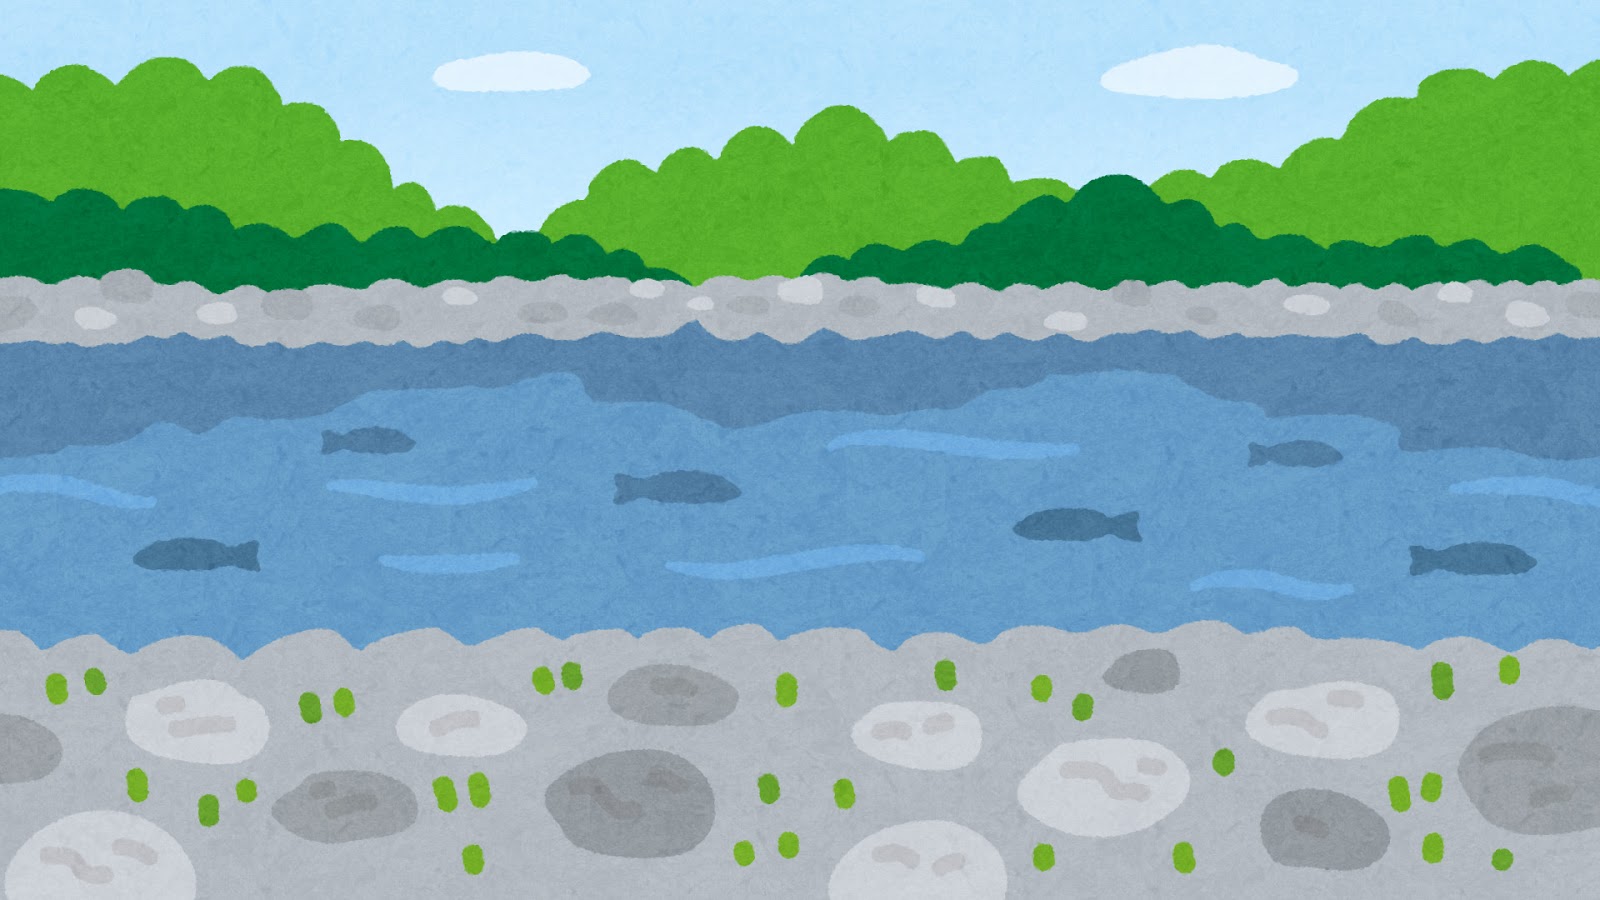 無料イラスト かわいいフリー素材集 川原のイラスト 背景素材